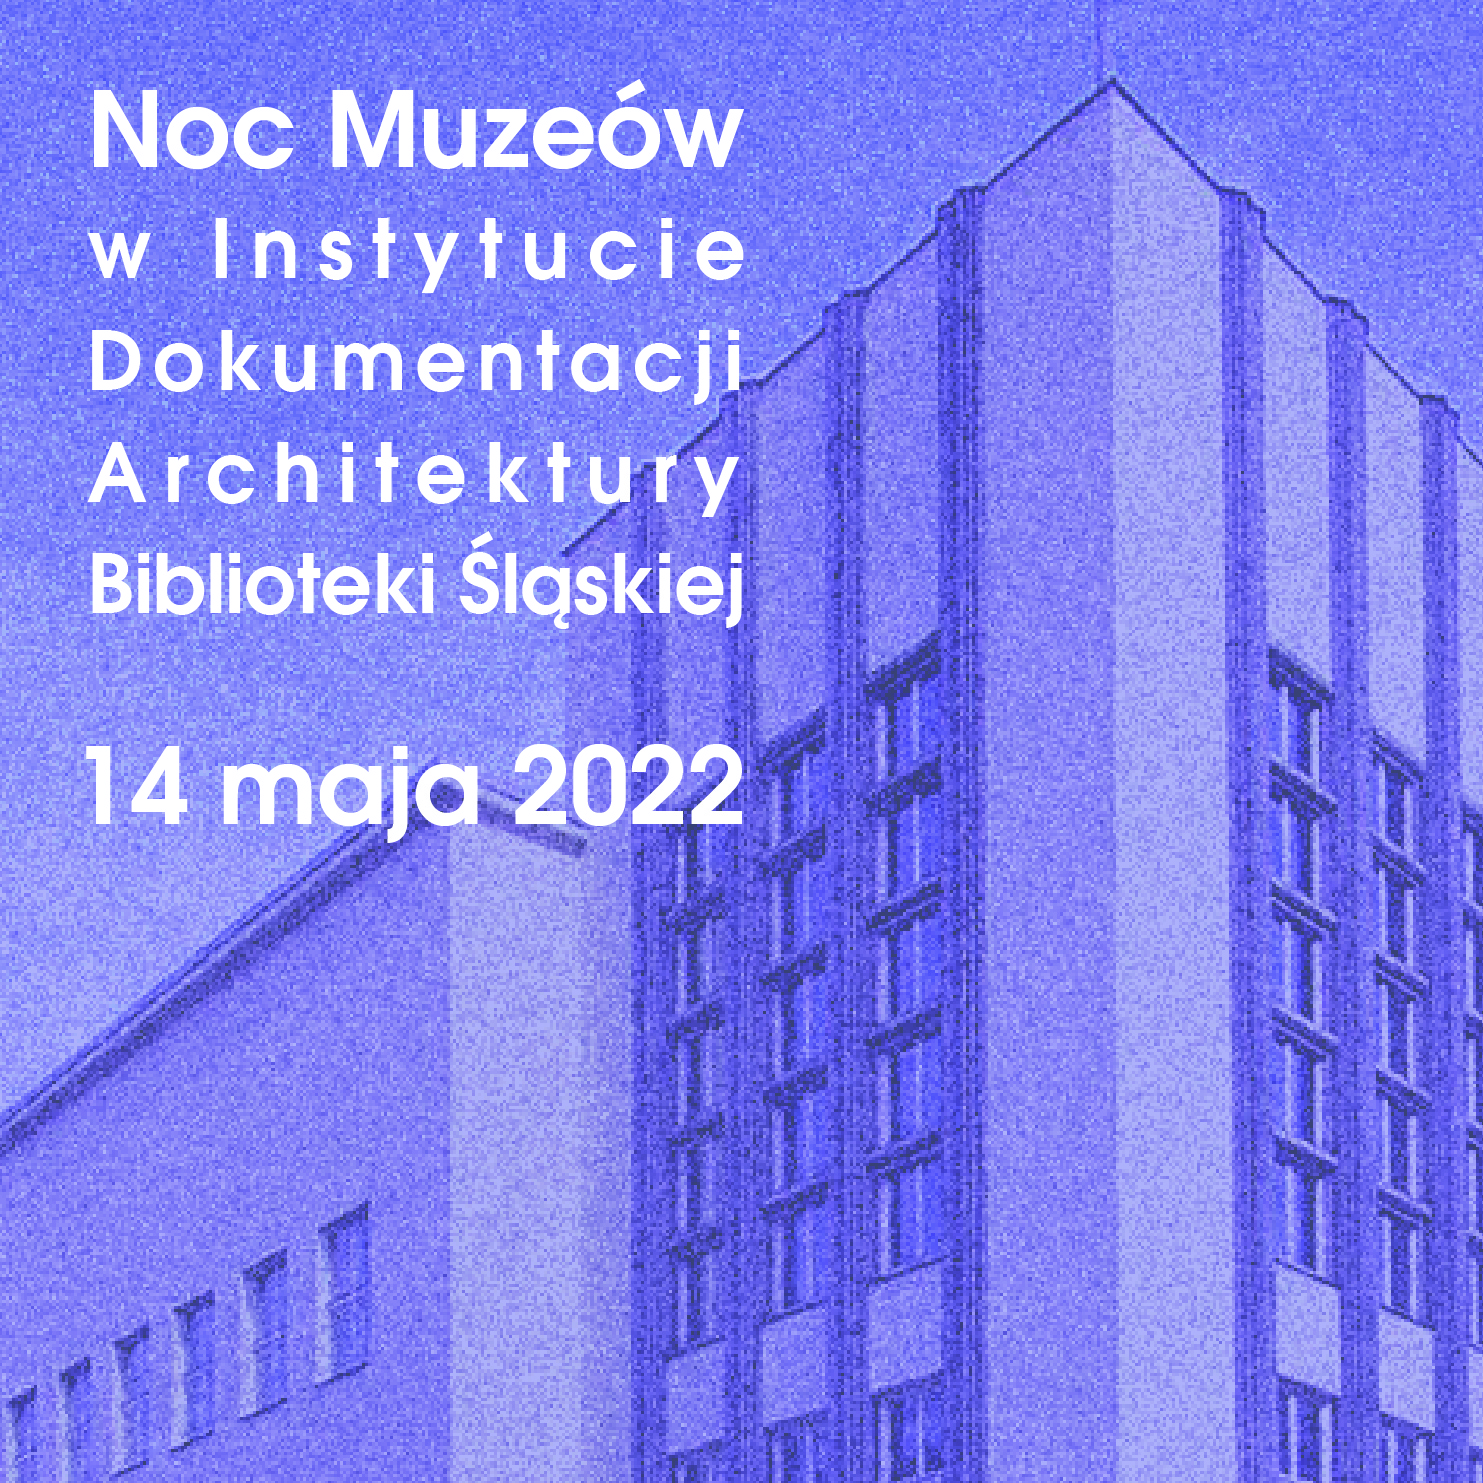 Noc Muzeów w Instytucie Dokumentacji Architektury Biblioteki Śląskiej - 14 maja 2022